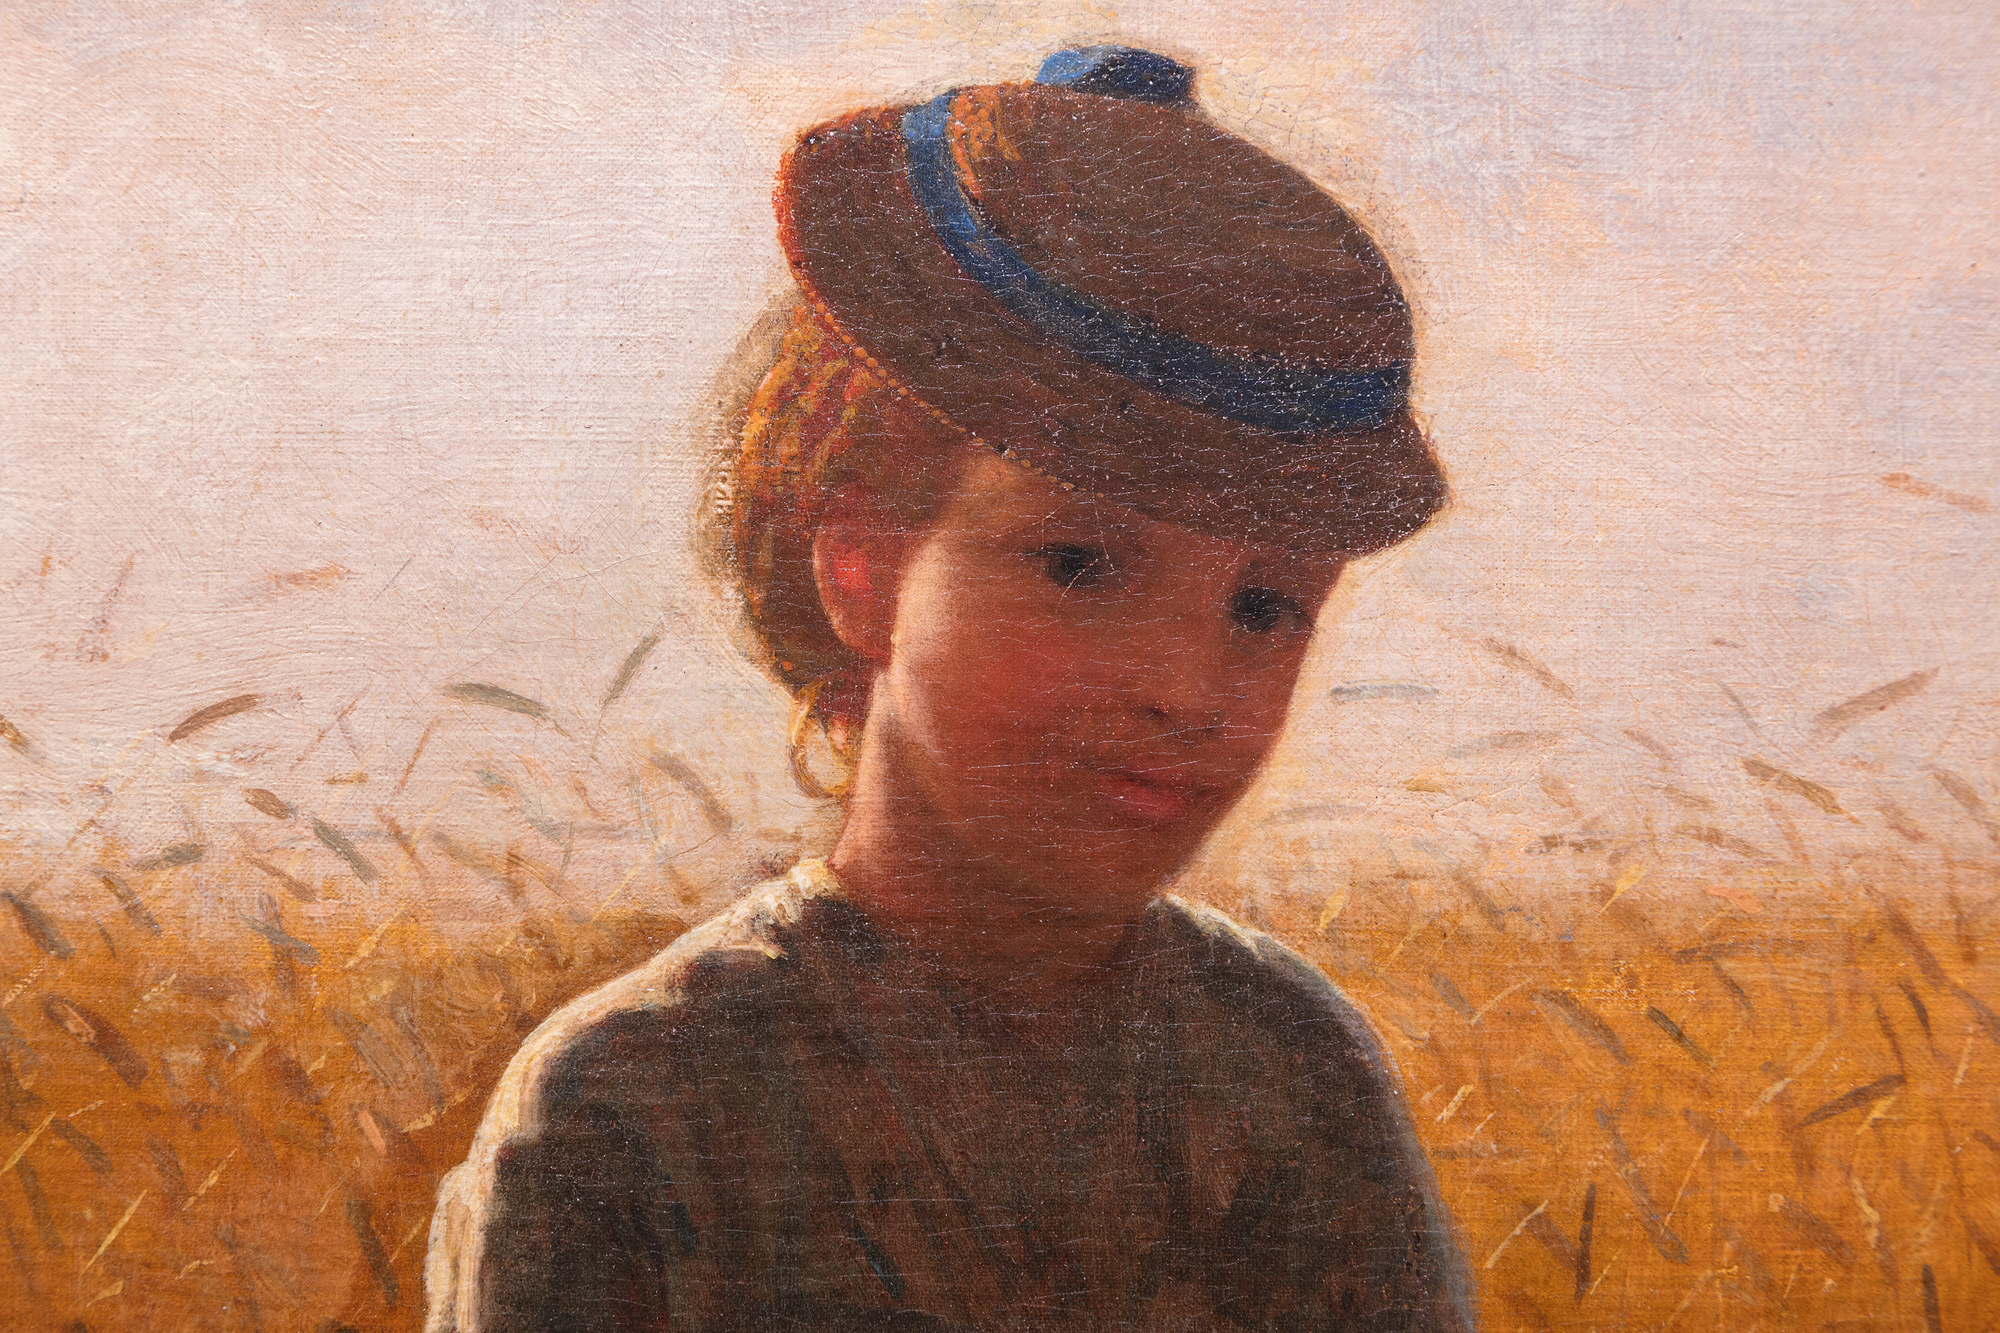 19世纪70年代初，温斯洛-霍默经常在位于纽约州哈德逊河和卡茨基尔山之间的一个小农庄附近绘制乡村生活场景，该小农庄因其出色的麦田而世代闻名。今天，赫尔利因激发了荷马最伟大的作品之一--1872年夏天绘制的《鞭子的Snap》而更为著名。在其他许多受该地区启发的画作中，《站在麦田里的女孩》感情丰富，但没有过度感伤。它与1866年在法国画的一幅题为《在麦田里》的研究报告以及次年他回到美国后画的另一幅报告直接相关。但荷马无疑会对这幅作品感到最自豪。这是一幅肖像画，一幅服装研究画，一幅具有欧洲田园画伟大传统的风俗画，也是一幅戏剧性的逆光、大气的巡回画，浸透在迅速消逝的阴暗时刻的光线中，并带有羊脂玉般的花香和麦穗的点缀。1874年，荷马送了四幅画给国家设计学院的展览。其中一幅名为 "女孩"。难道不是这一幅吗？